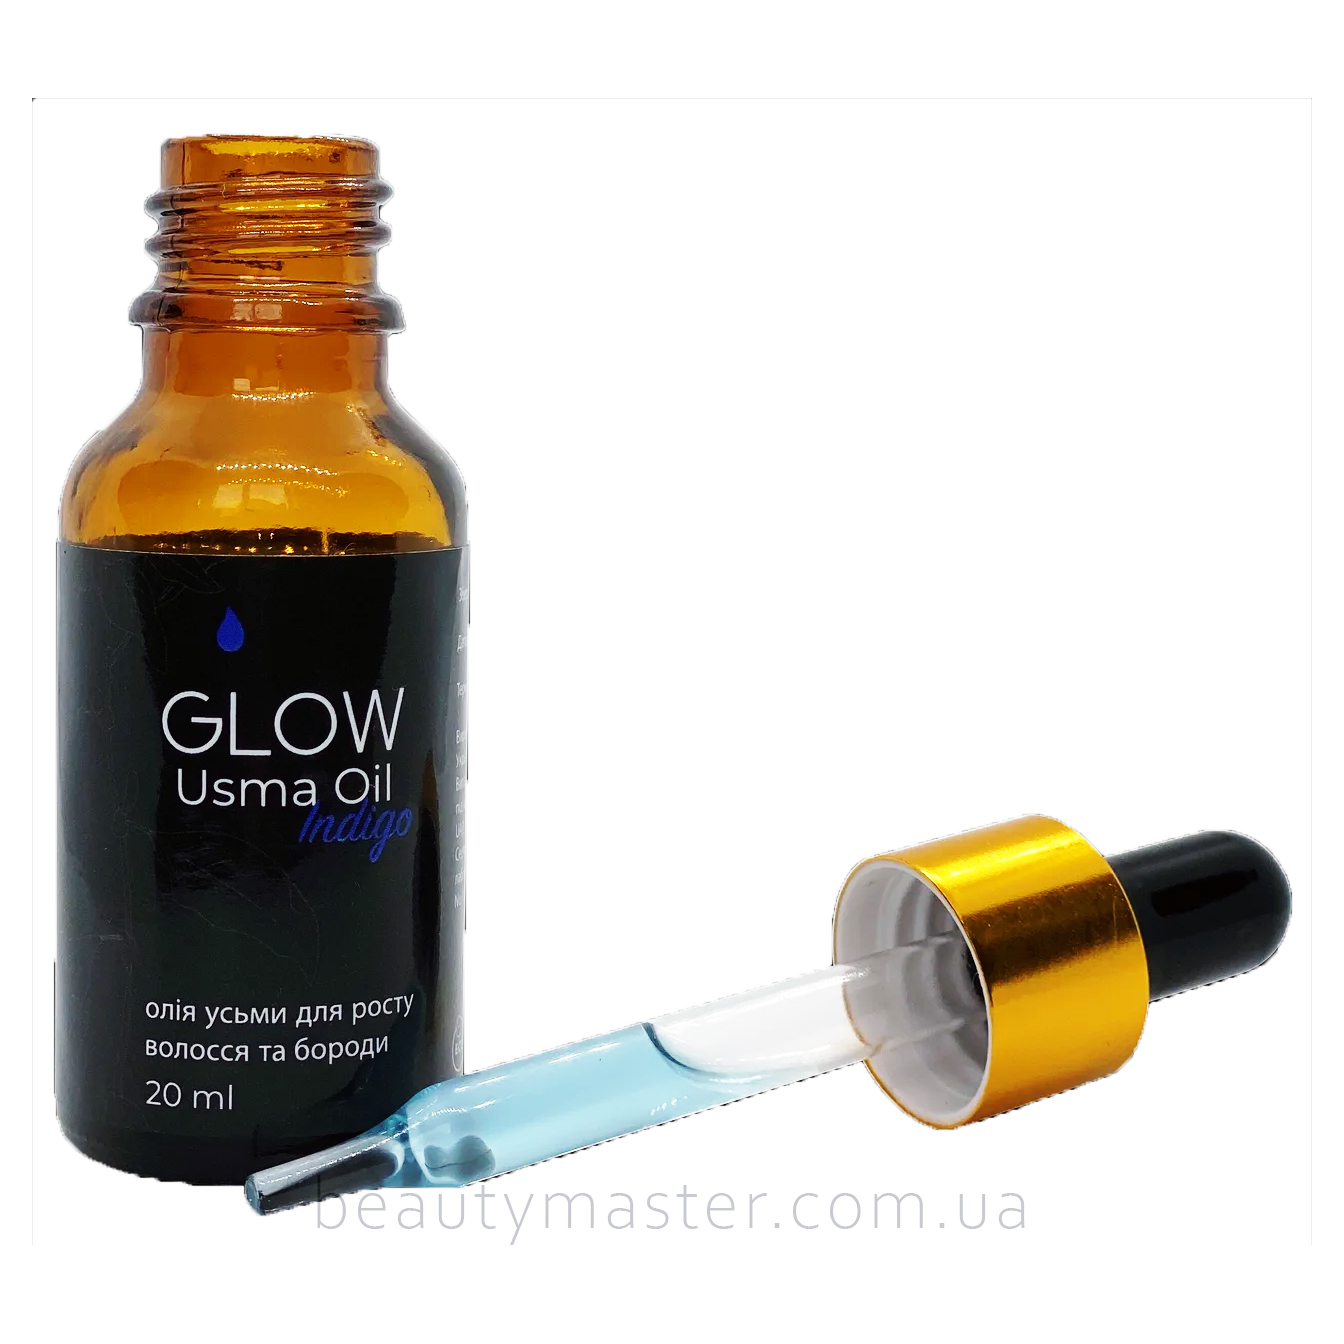 GLOW Usma Oil Indigo масло семян усьмы с добавлением пигмента индиго 15 мл